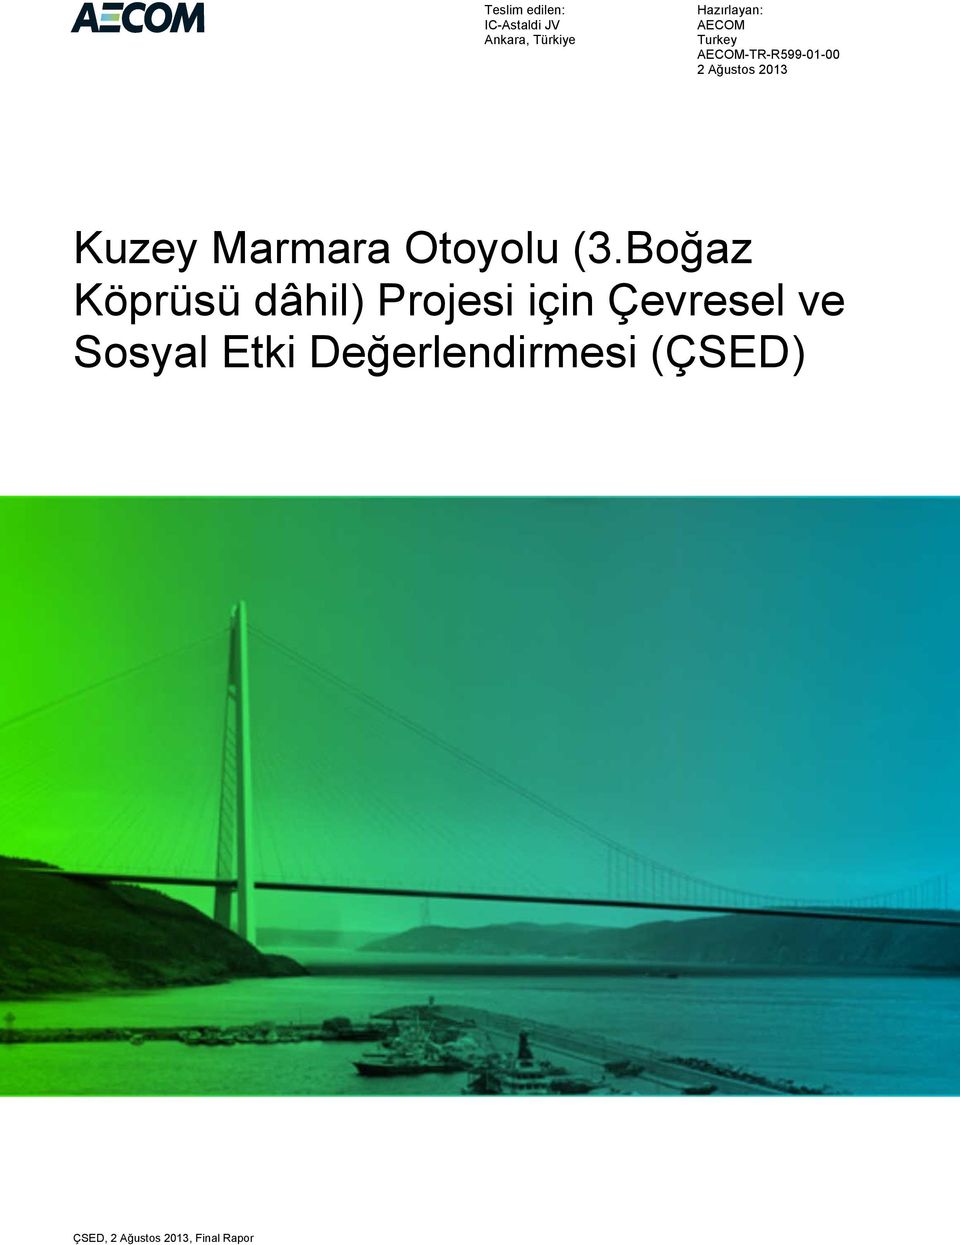 2013 Kuzey Marmara Otoyolu (3.